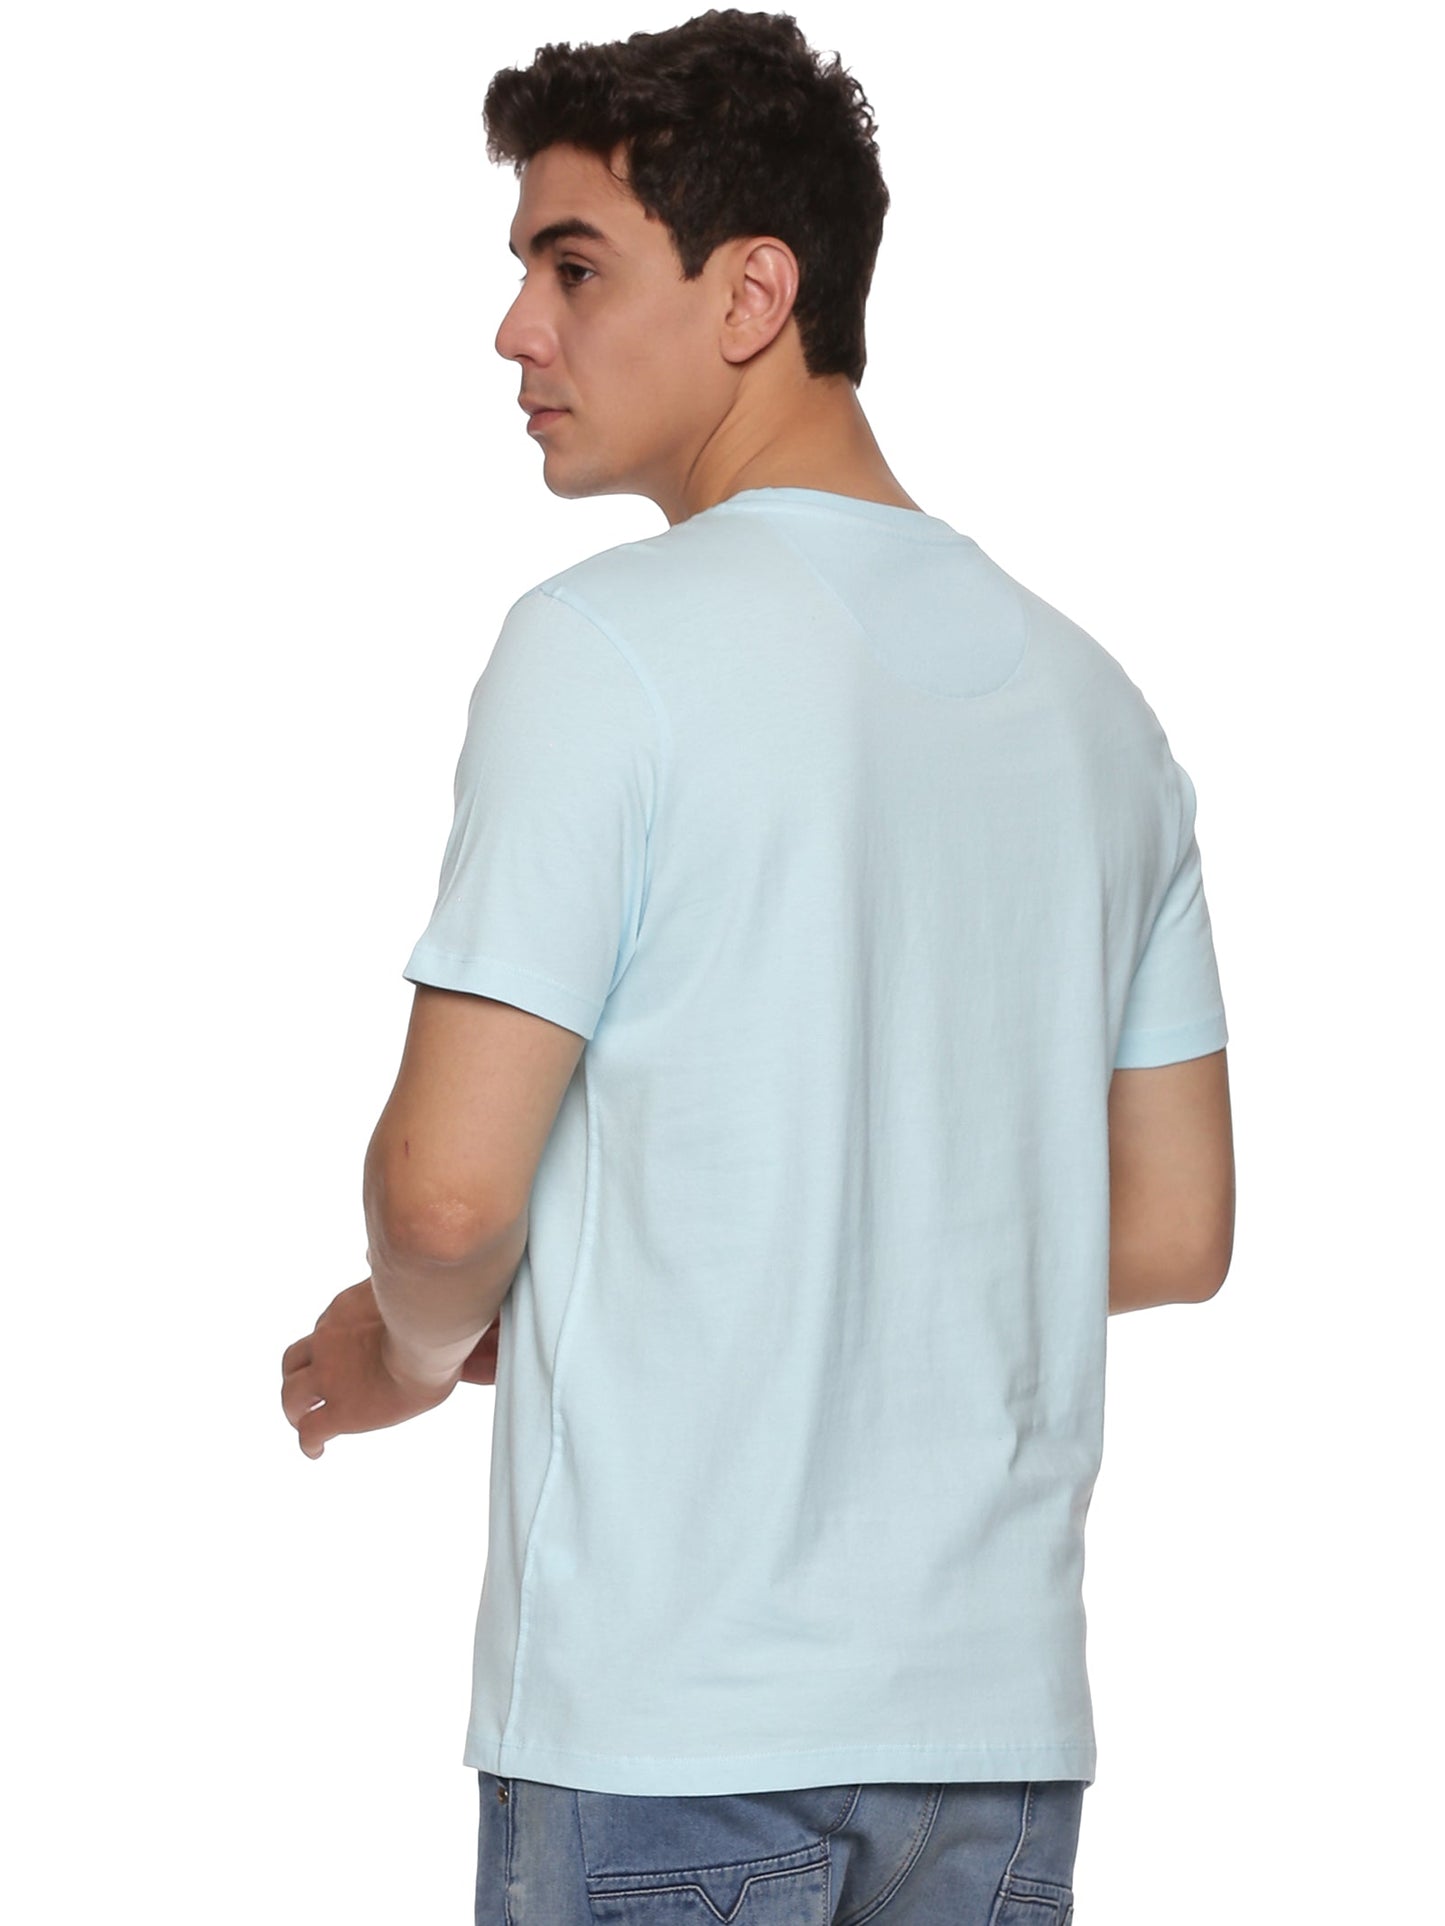 Men Round Neck Basic Organic T-Shirt - Pack Of 3 (Premium)